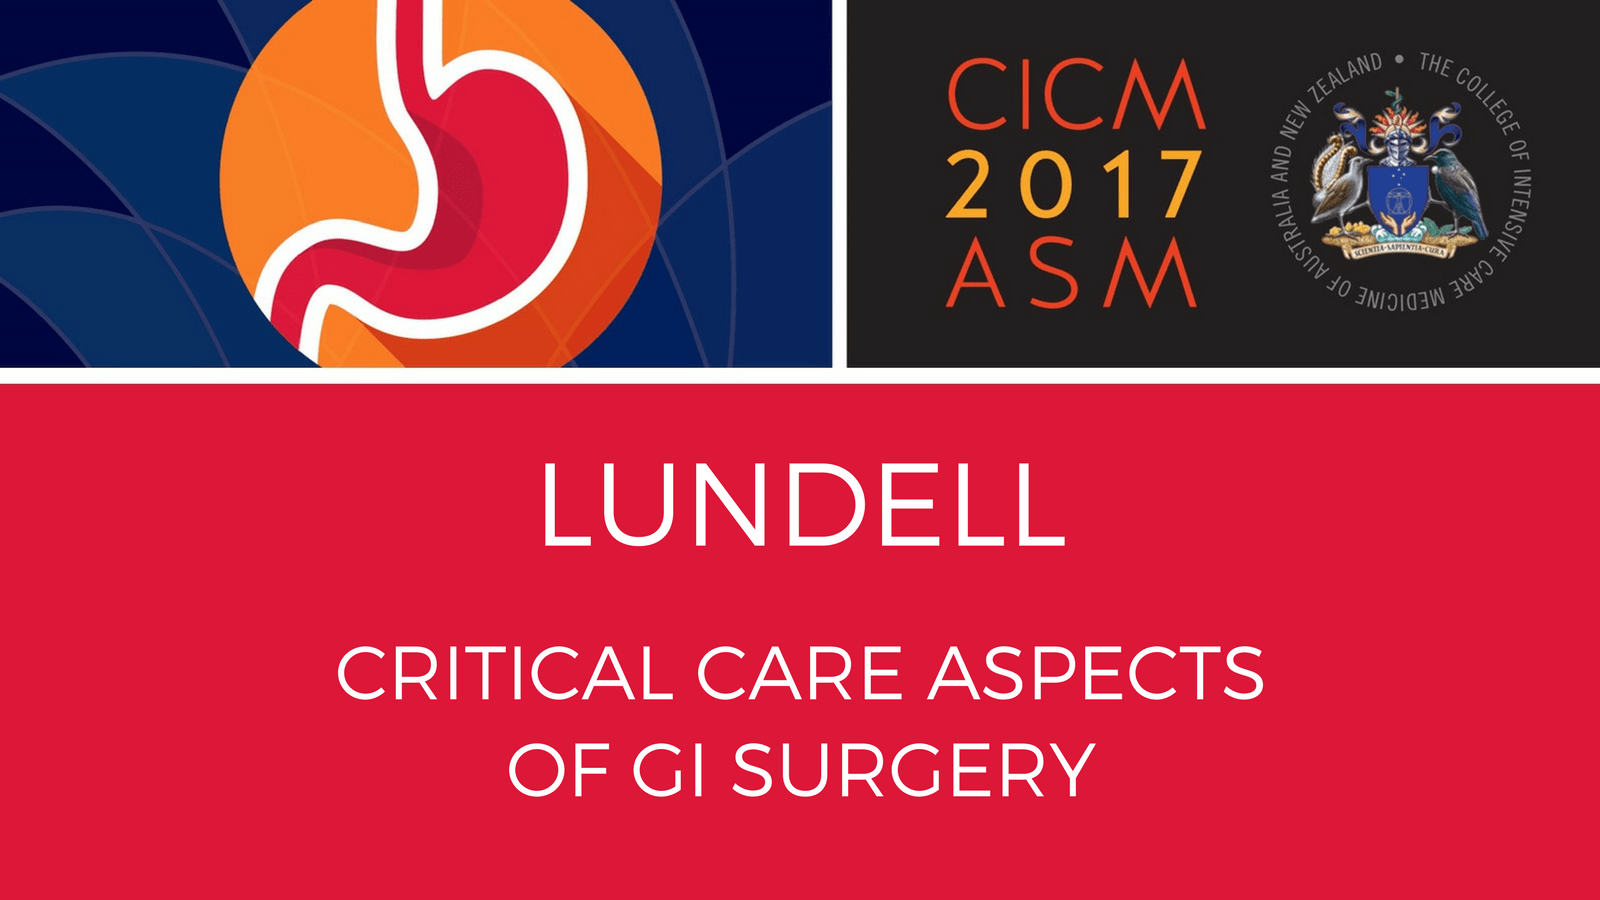 Critical care aspect of GI Surgery